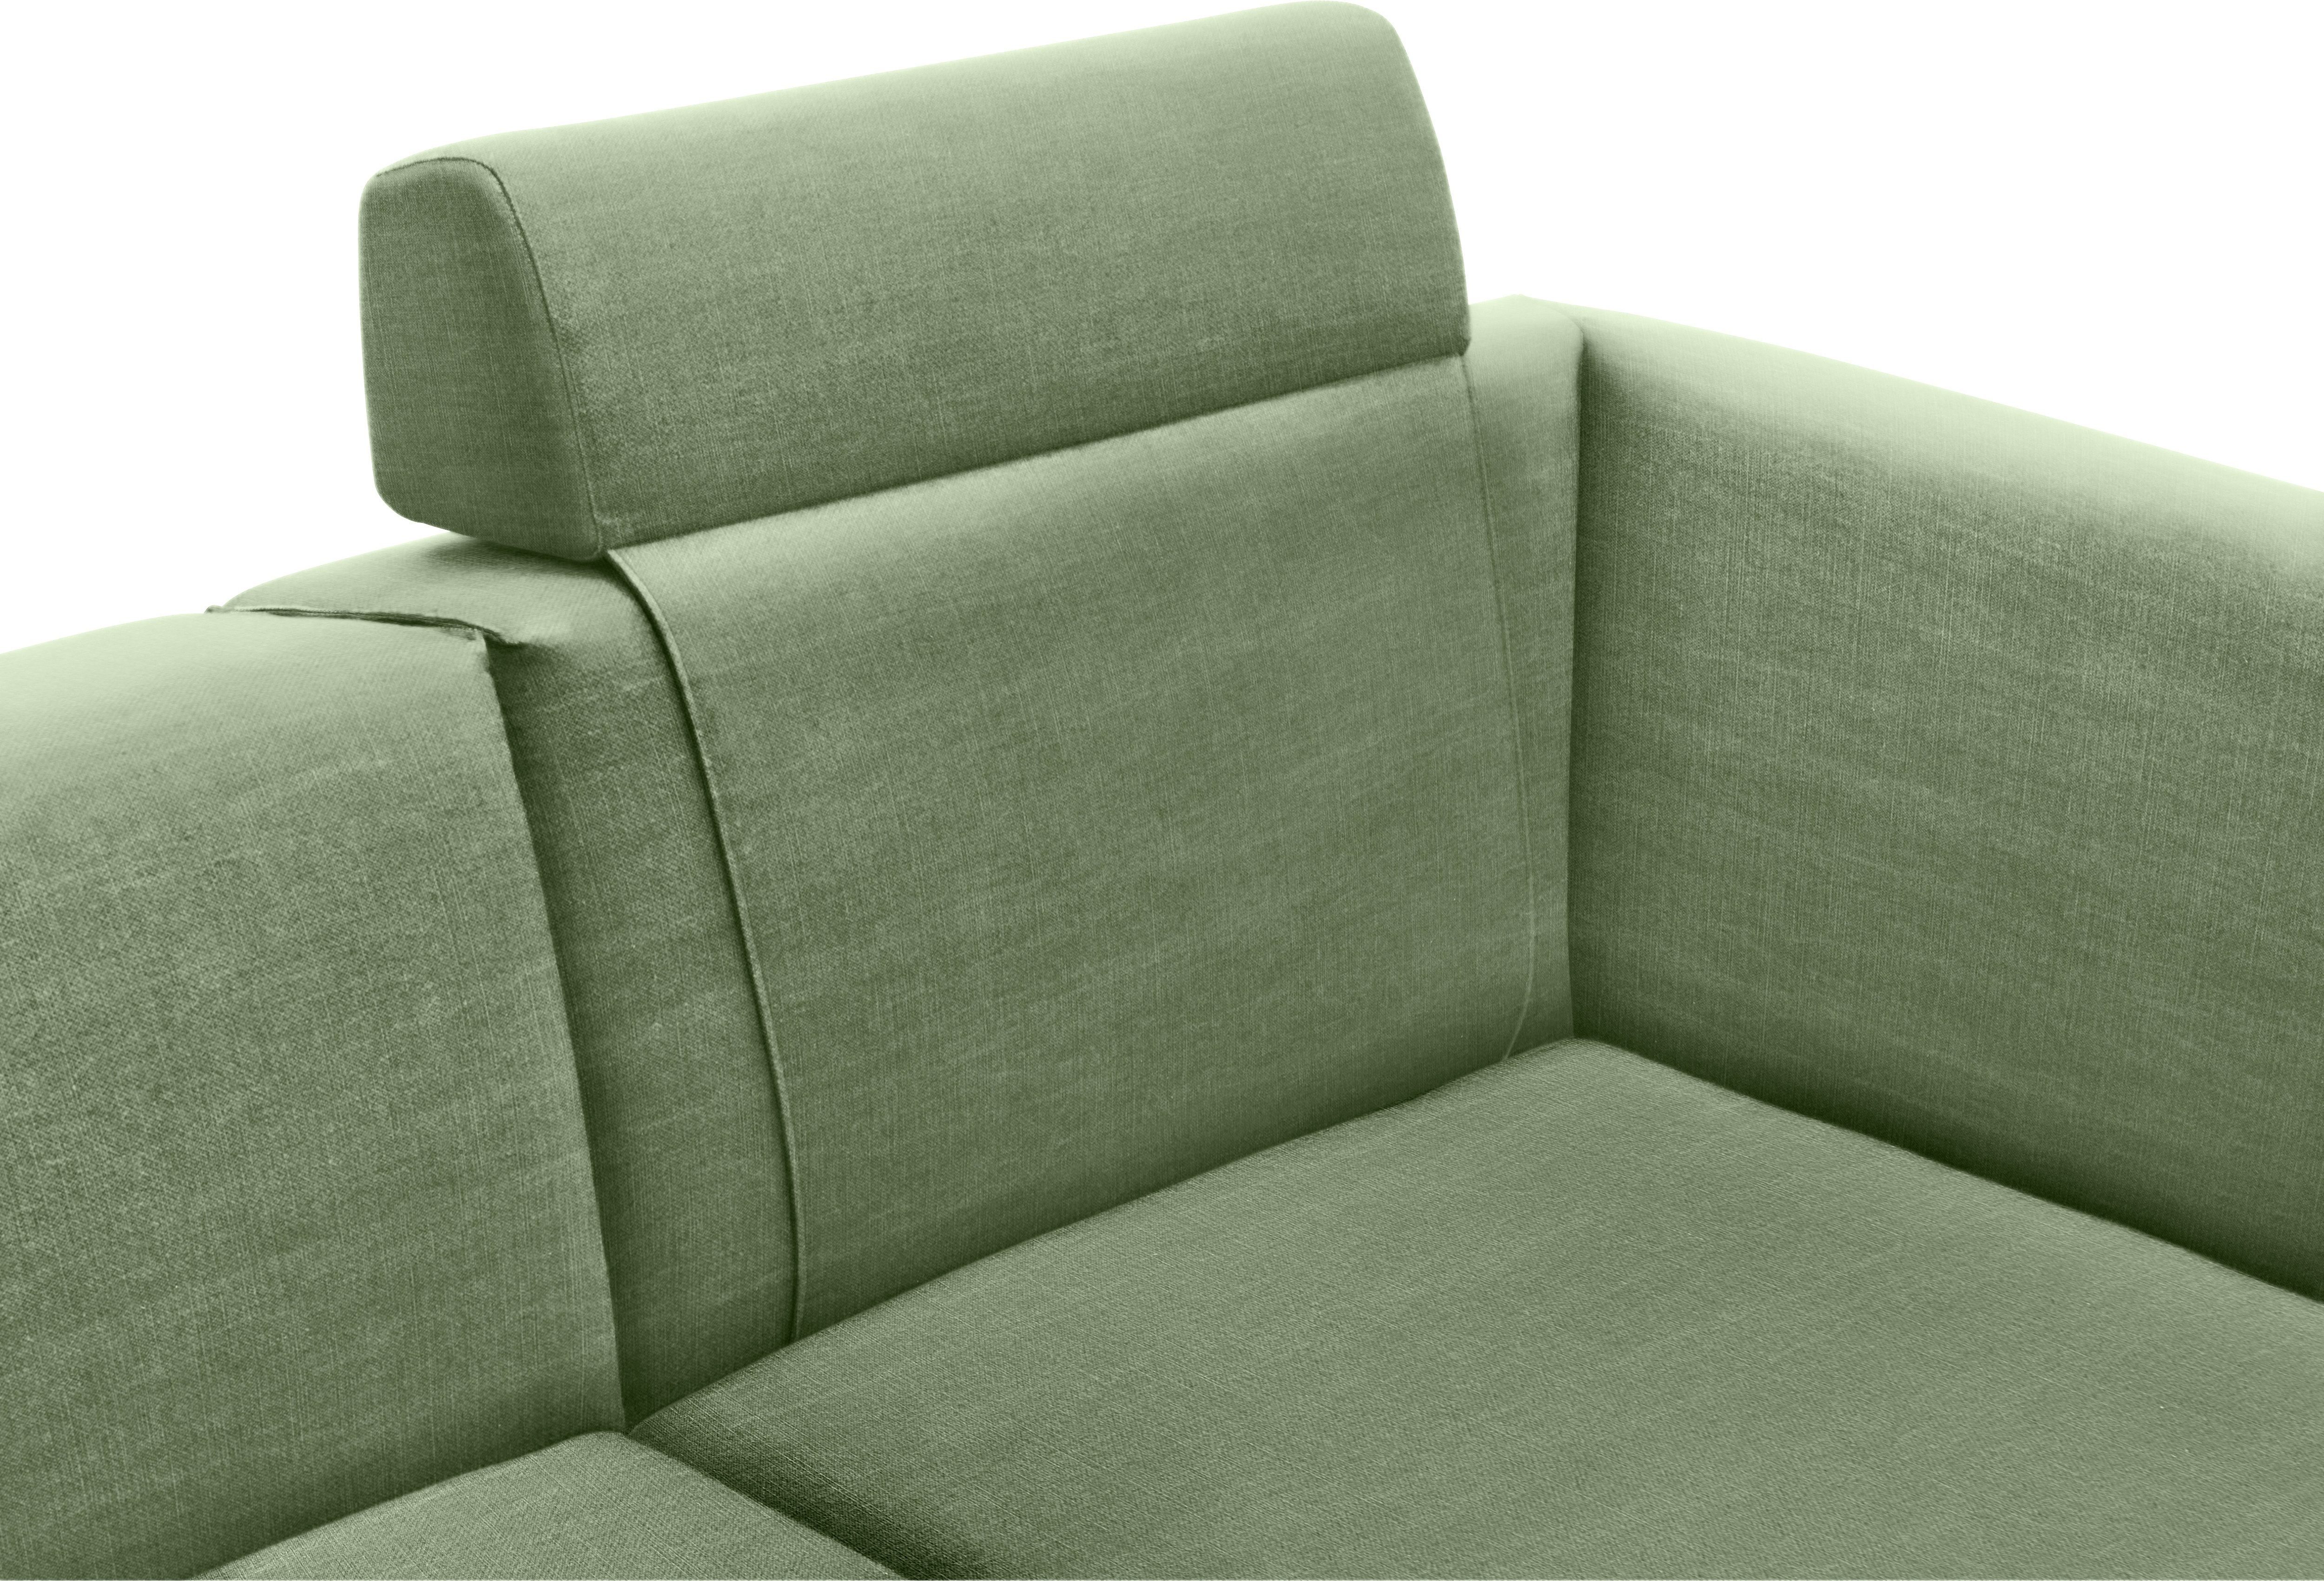 Wohnzimmermöbel | » Couch OTTO kaufen Wohnzimmermöbel Sofa